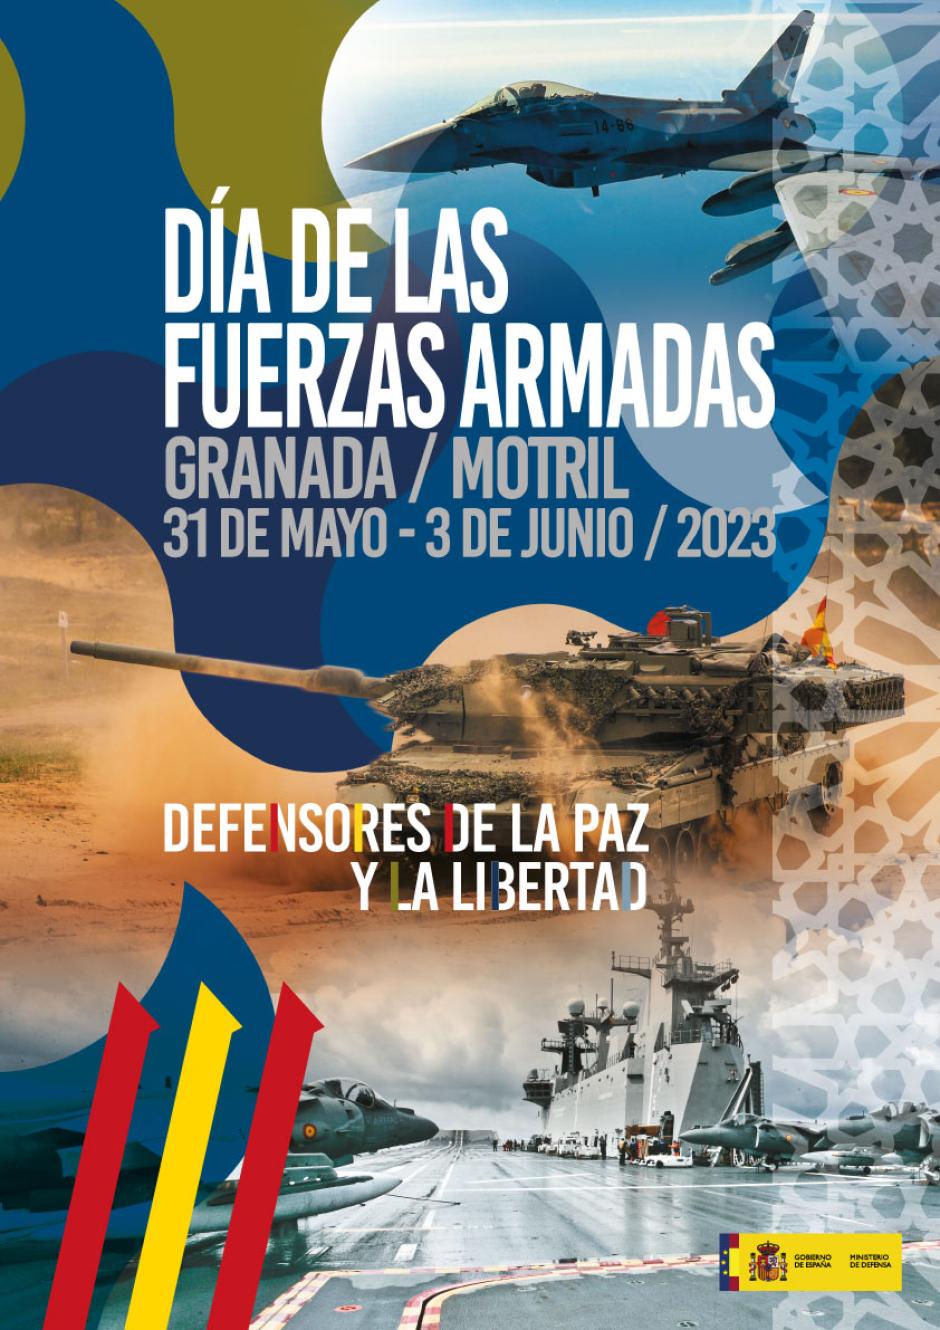 Cartel del Día de las Fuerzas Armadas 2023, que tendrá lugar en Granada y Motril del 31 de mayo al 3 de junio